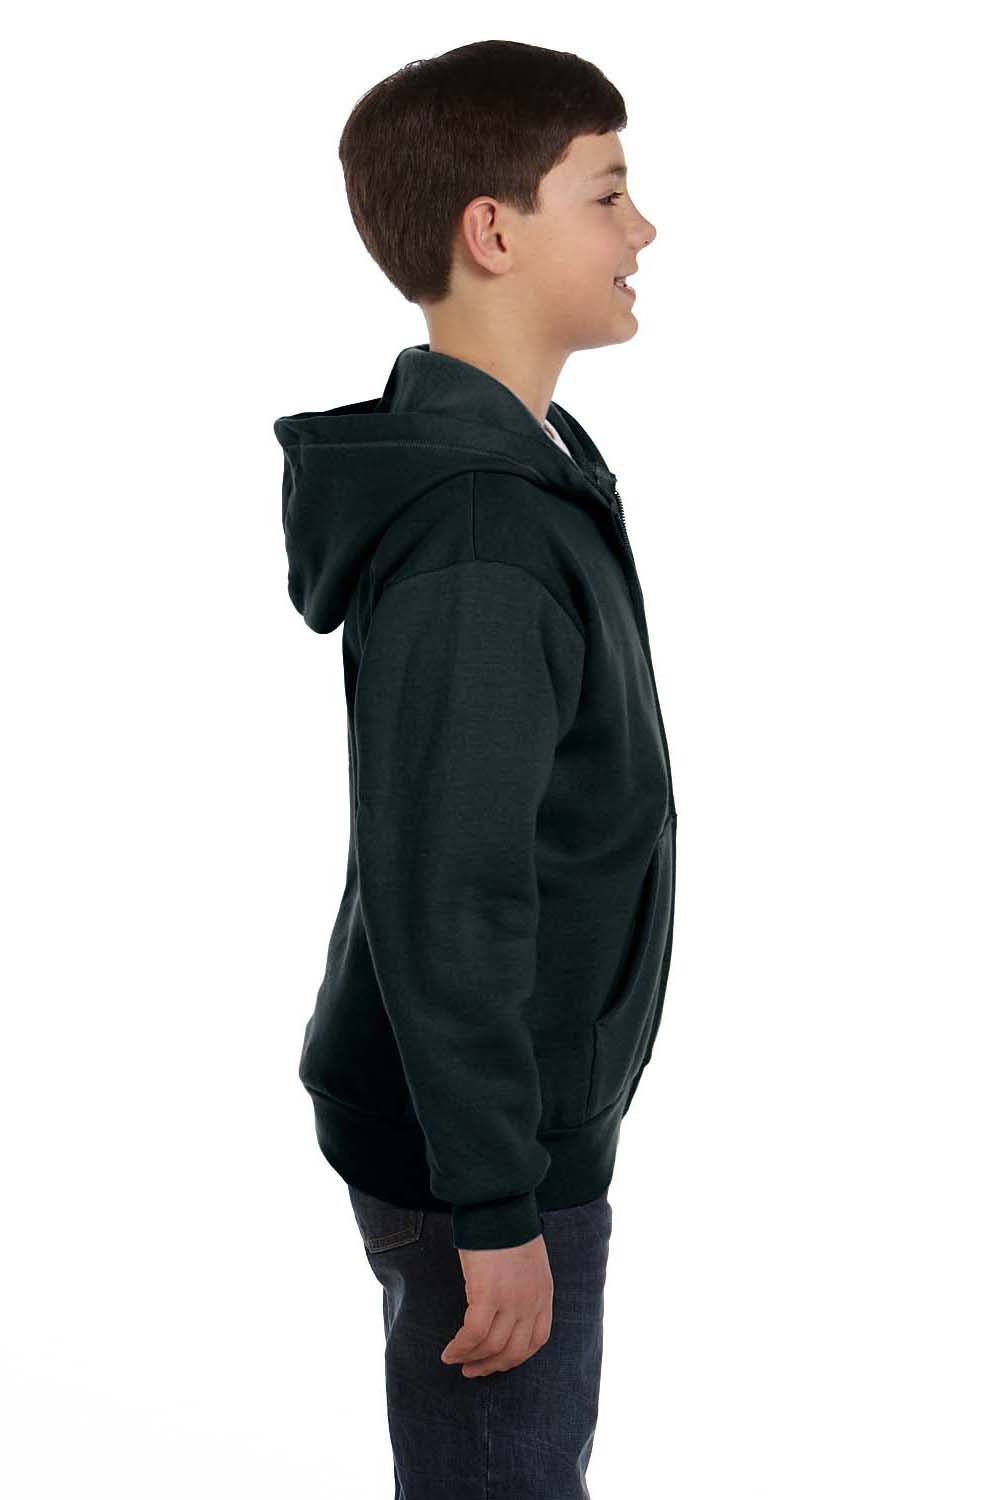 Hanes P480 Youth EcoSmart Print Pro XP Full Zip Hooded Sweatshirt Hoodie Black Side